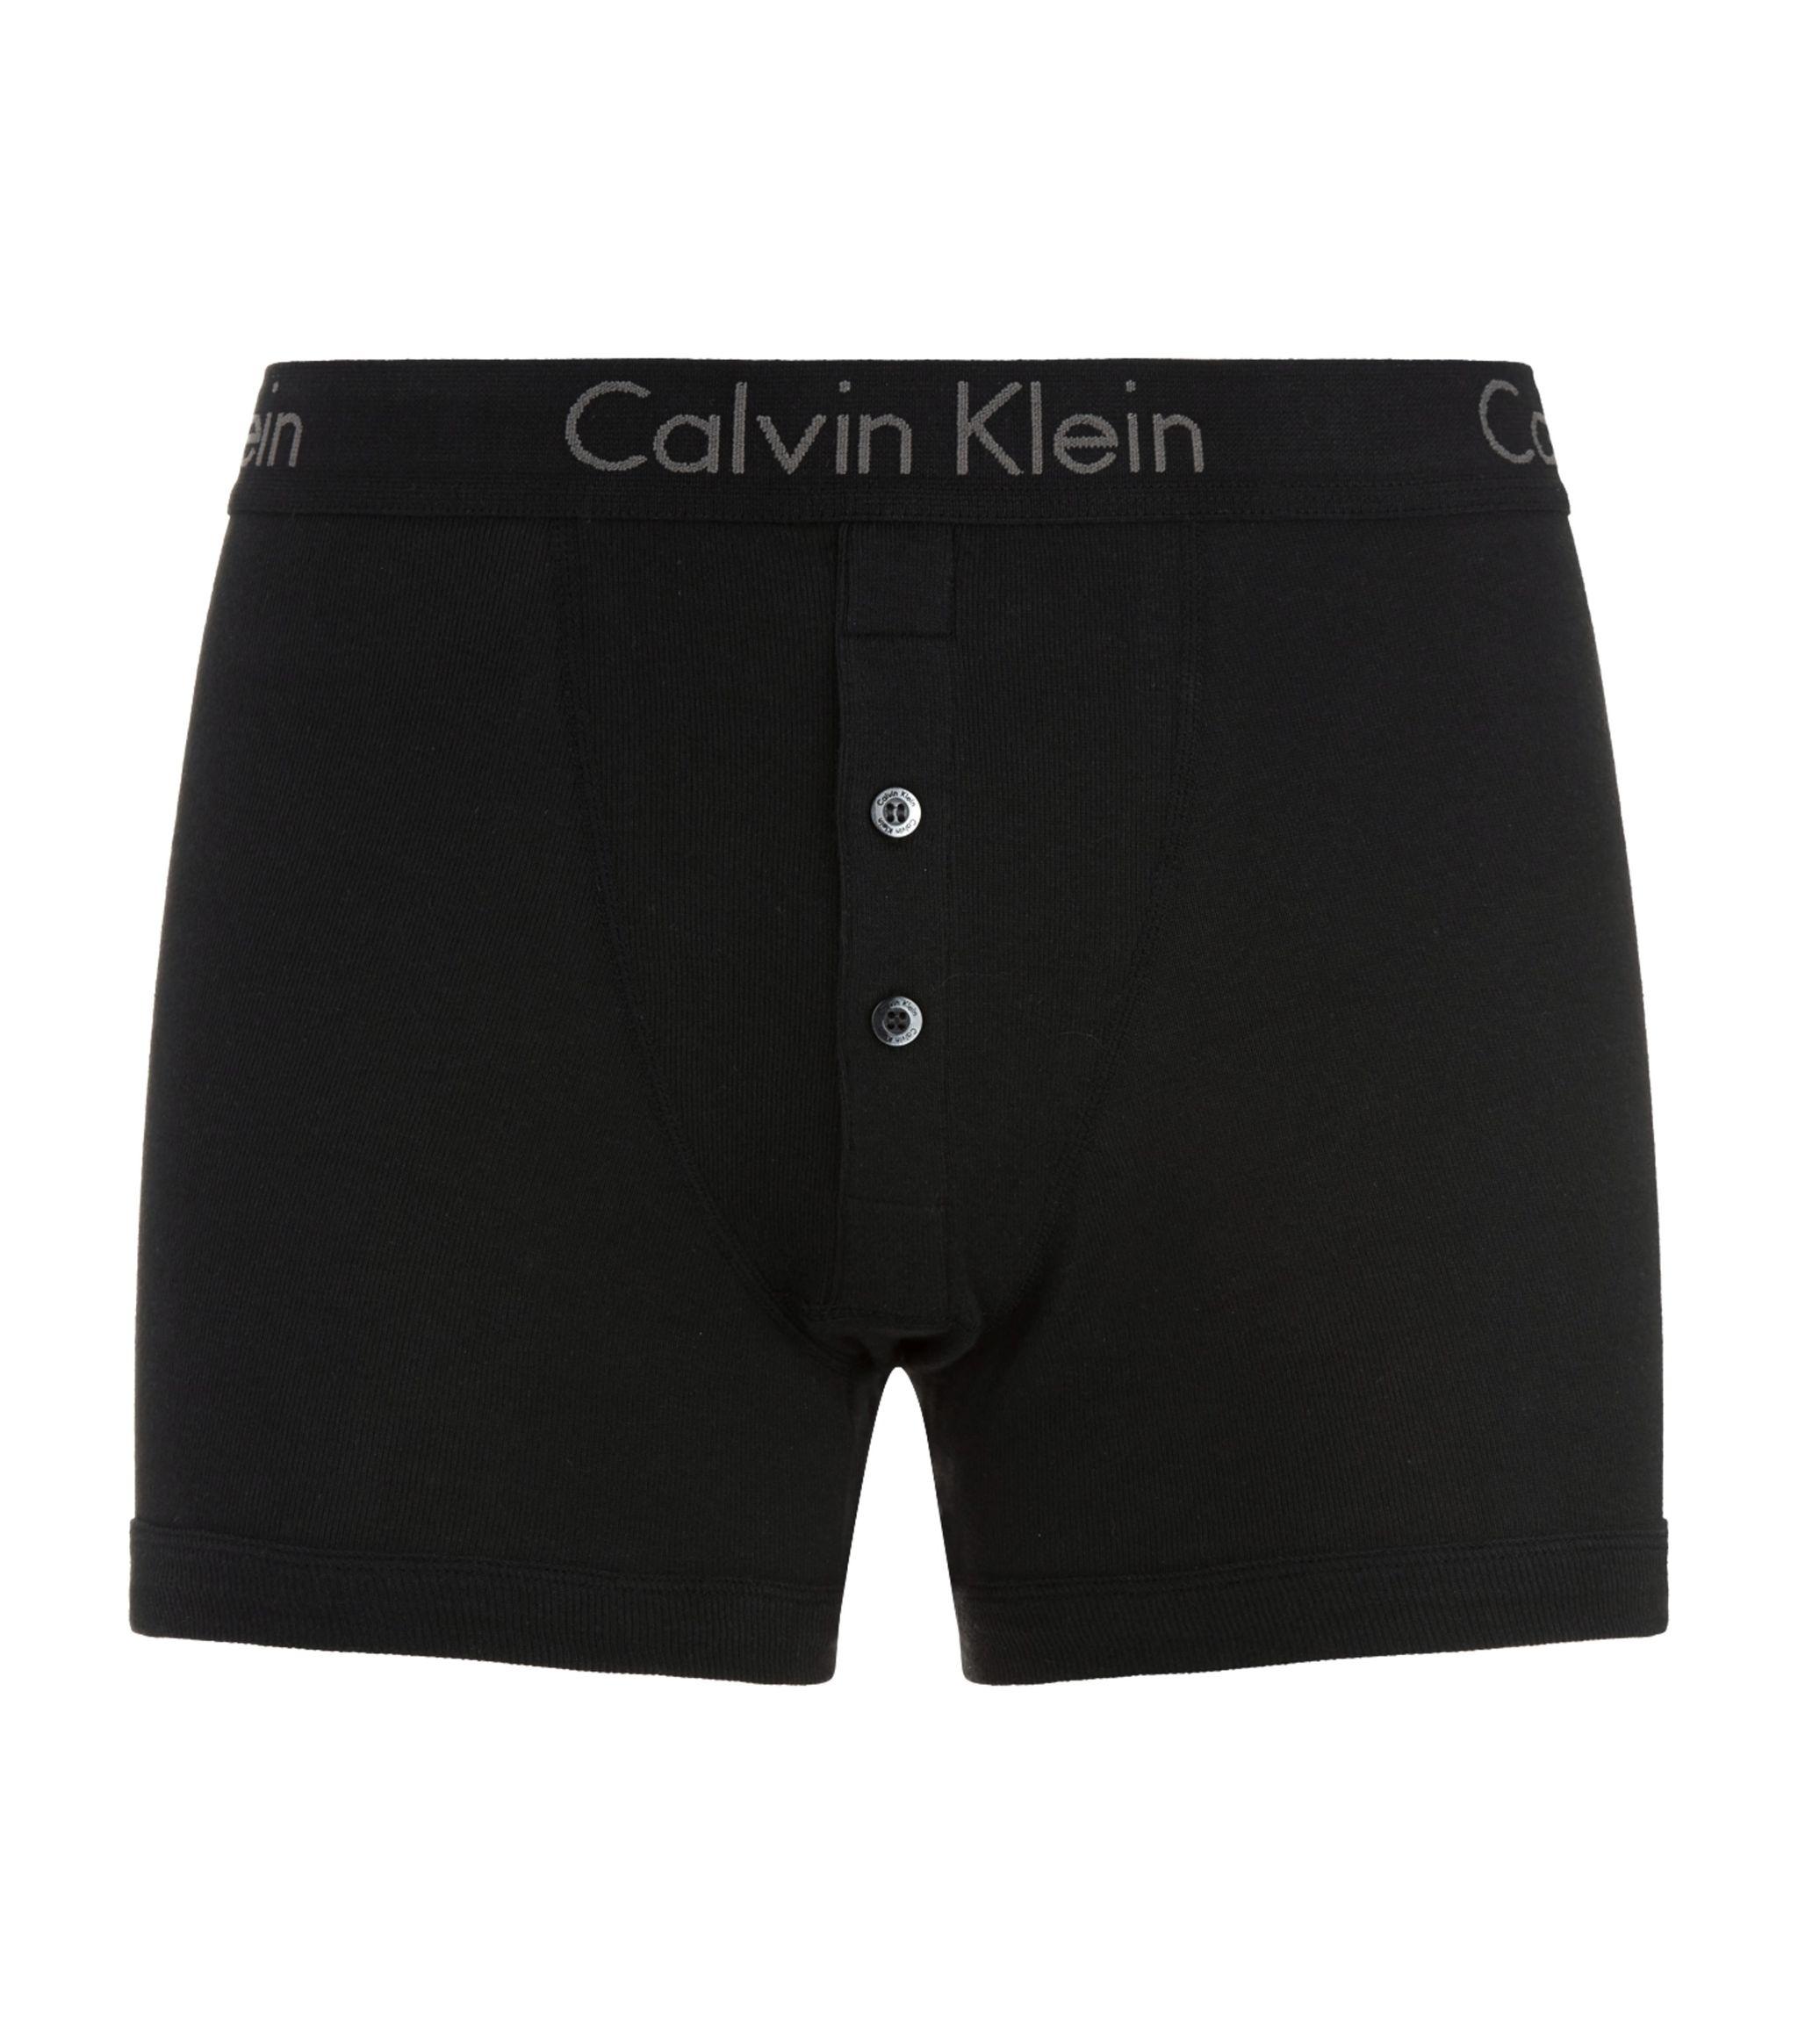 Calvin Klein Cotton Button Fly Boxer Briefs in Black for Men - Lyst